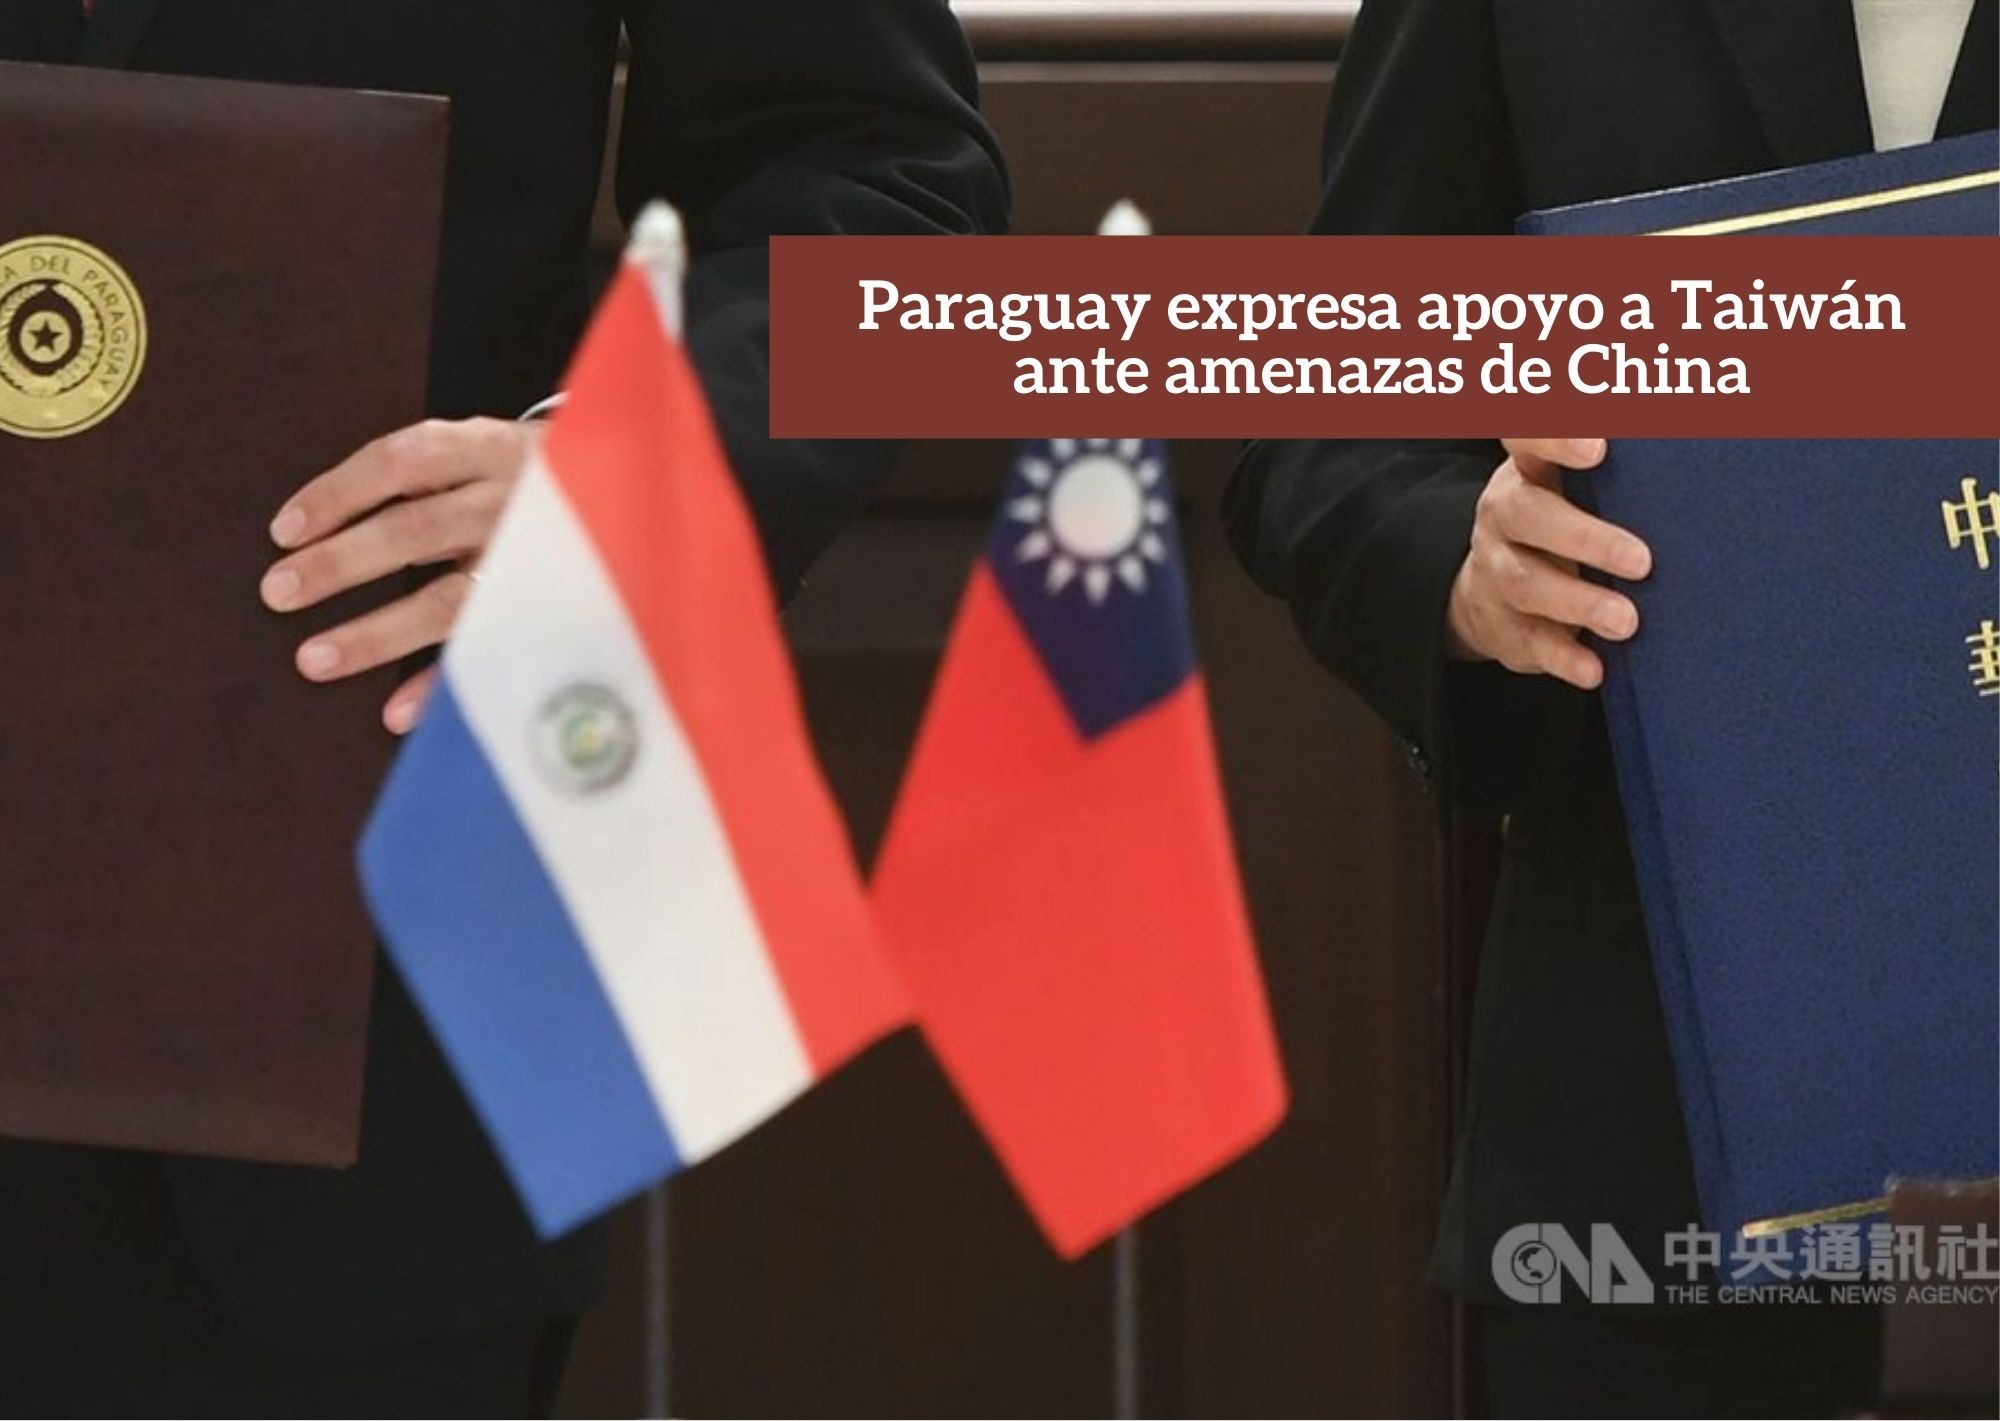 Paraguay expresa apoyo a Taiwán ante amenazas de China